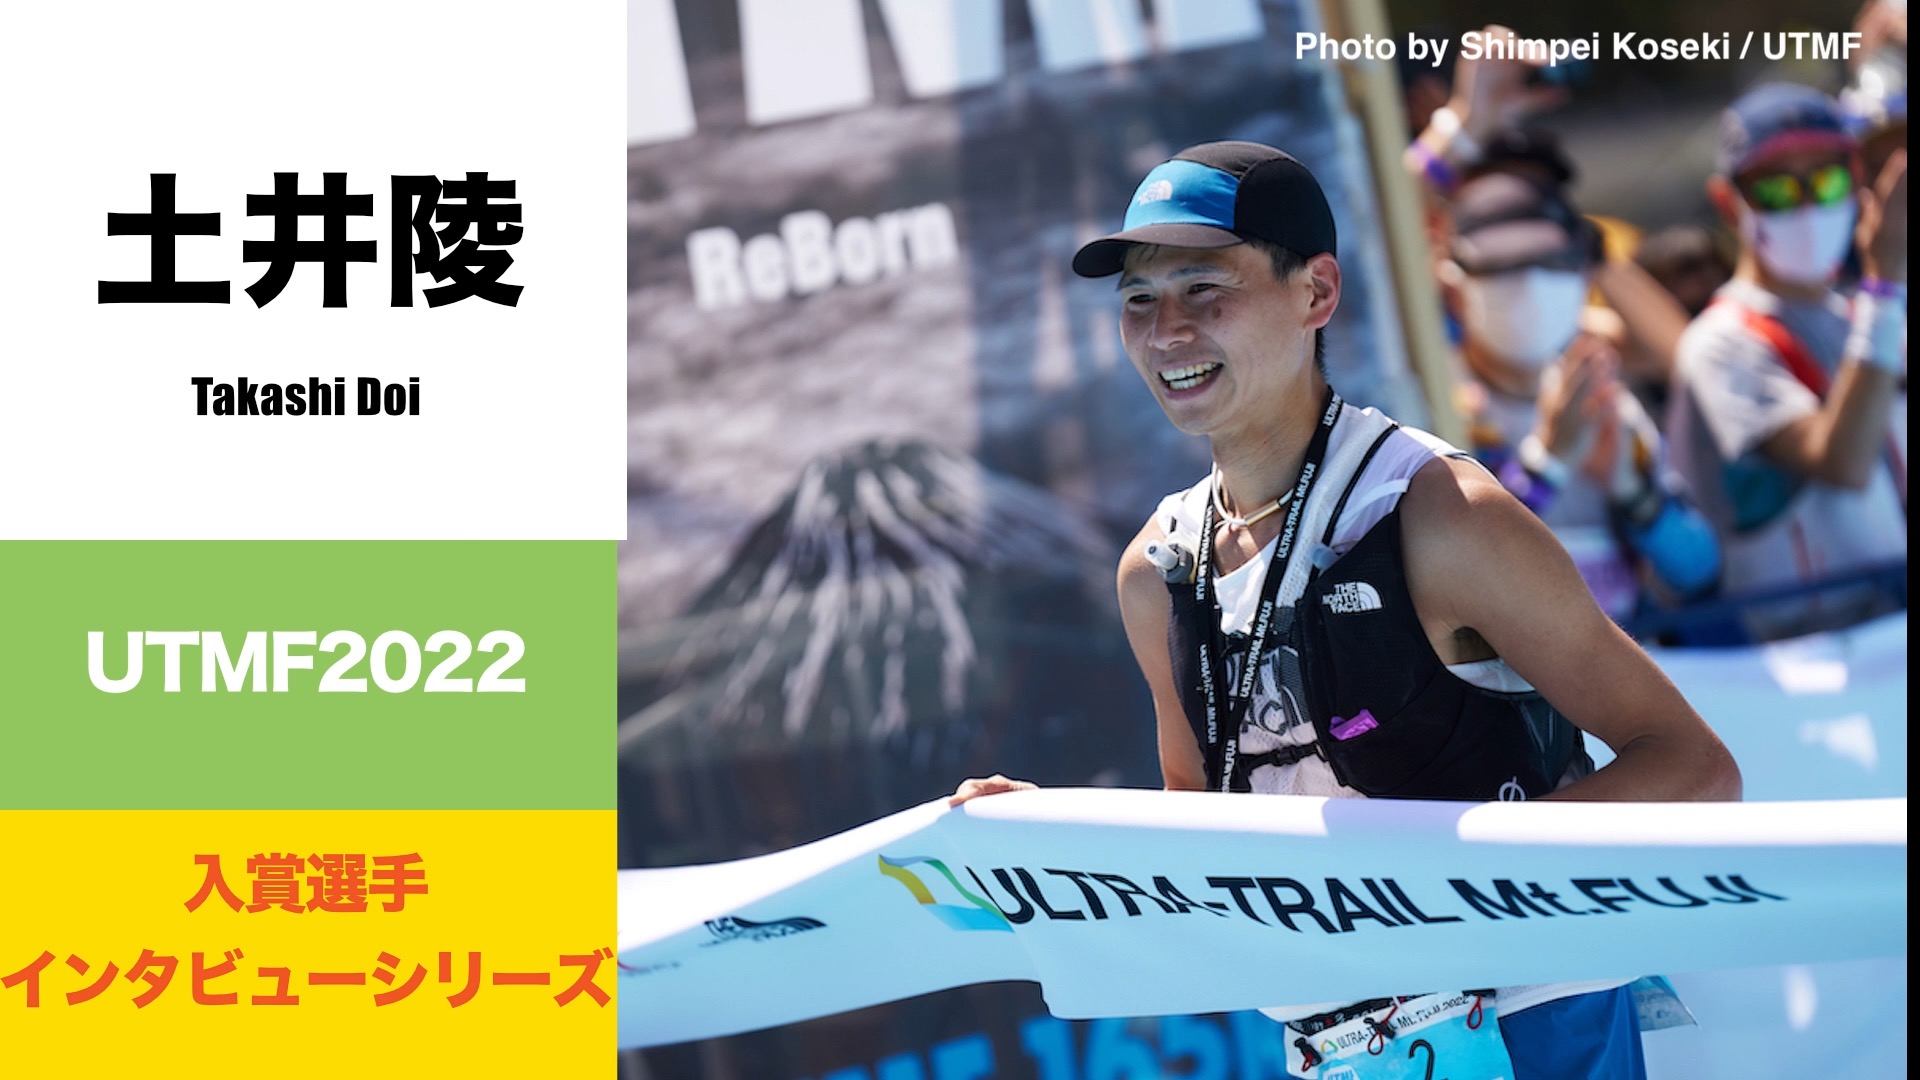 土井陵 Takashi DOI UTMF 2022 レース後インタビュー | DogsorCaravan トレイルランニング・スカイランニング